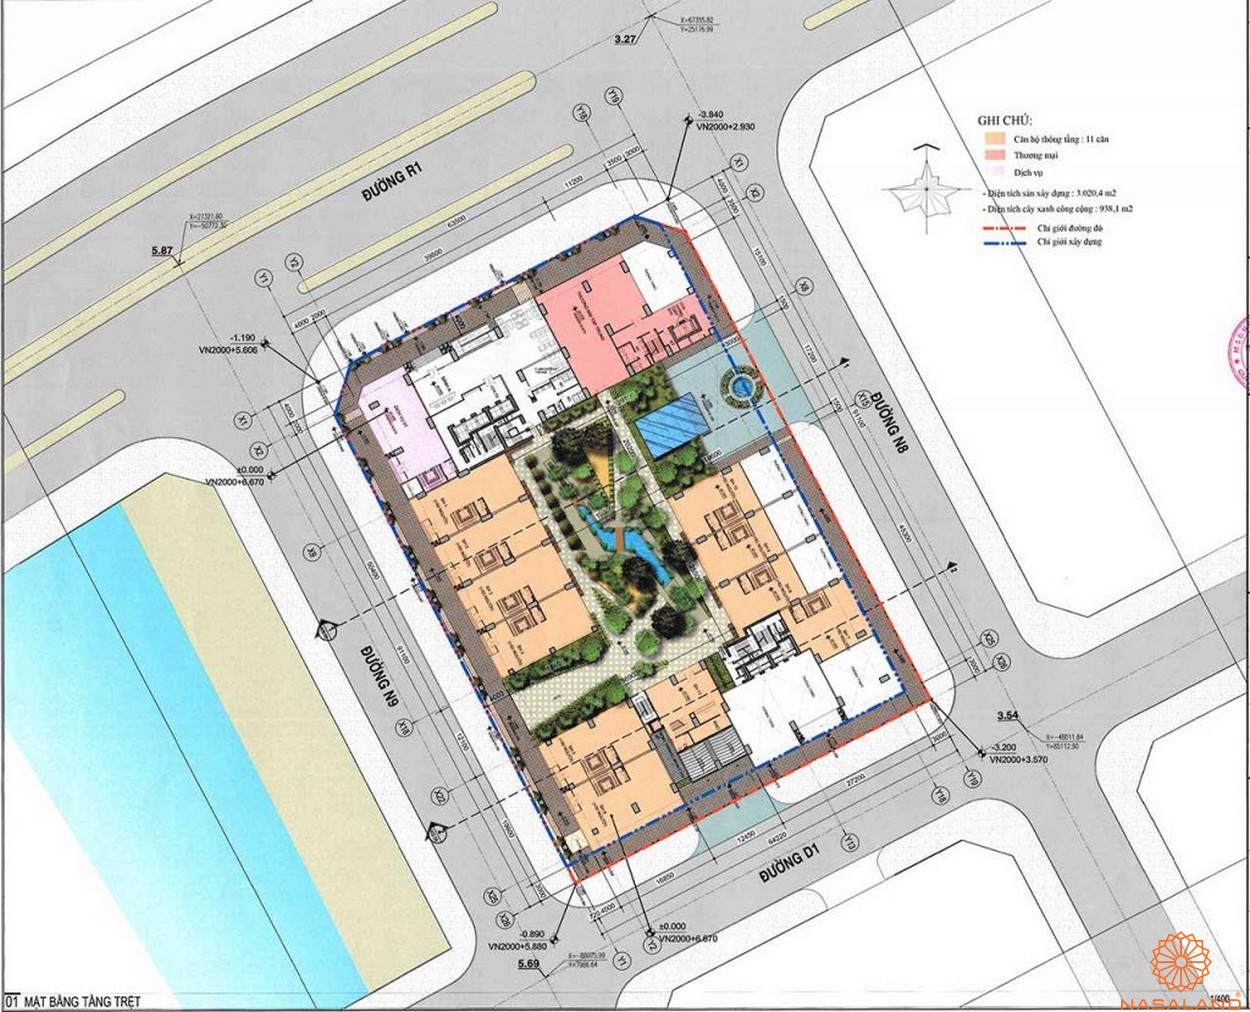 Mặt bằng tầng trệt dự án căn hộ Riverfront Residence quận 2Mặt bằng tầng trệt dự án căn hộ Riverfront Residence quận 2